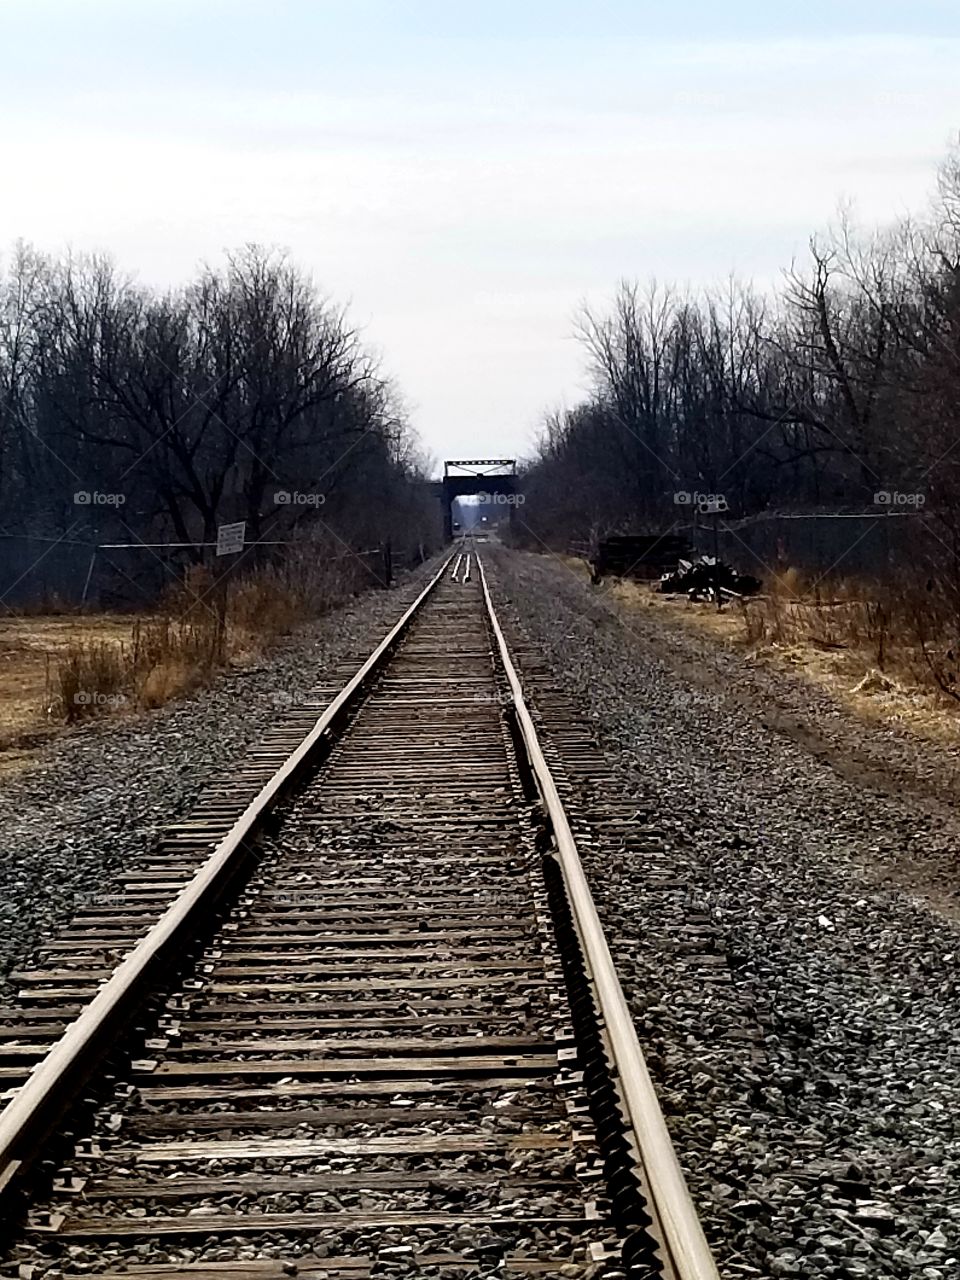 Niagara railway